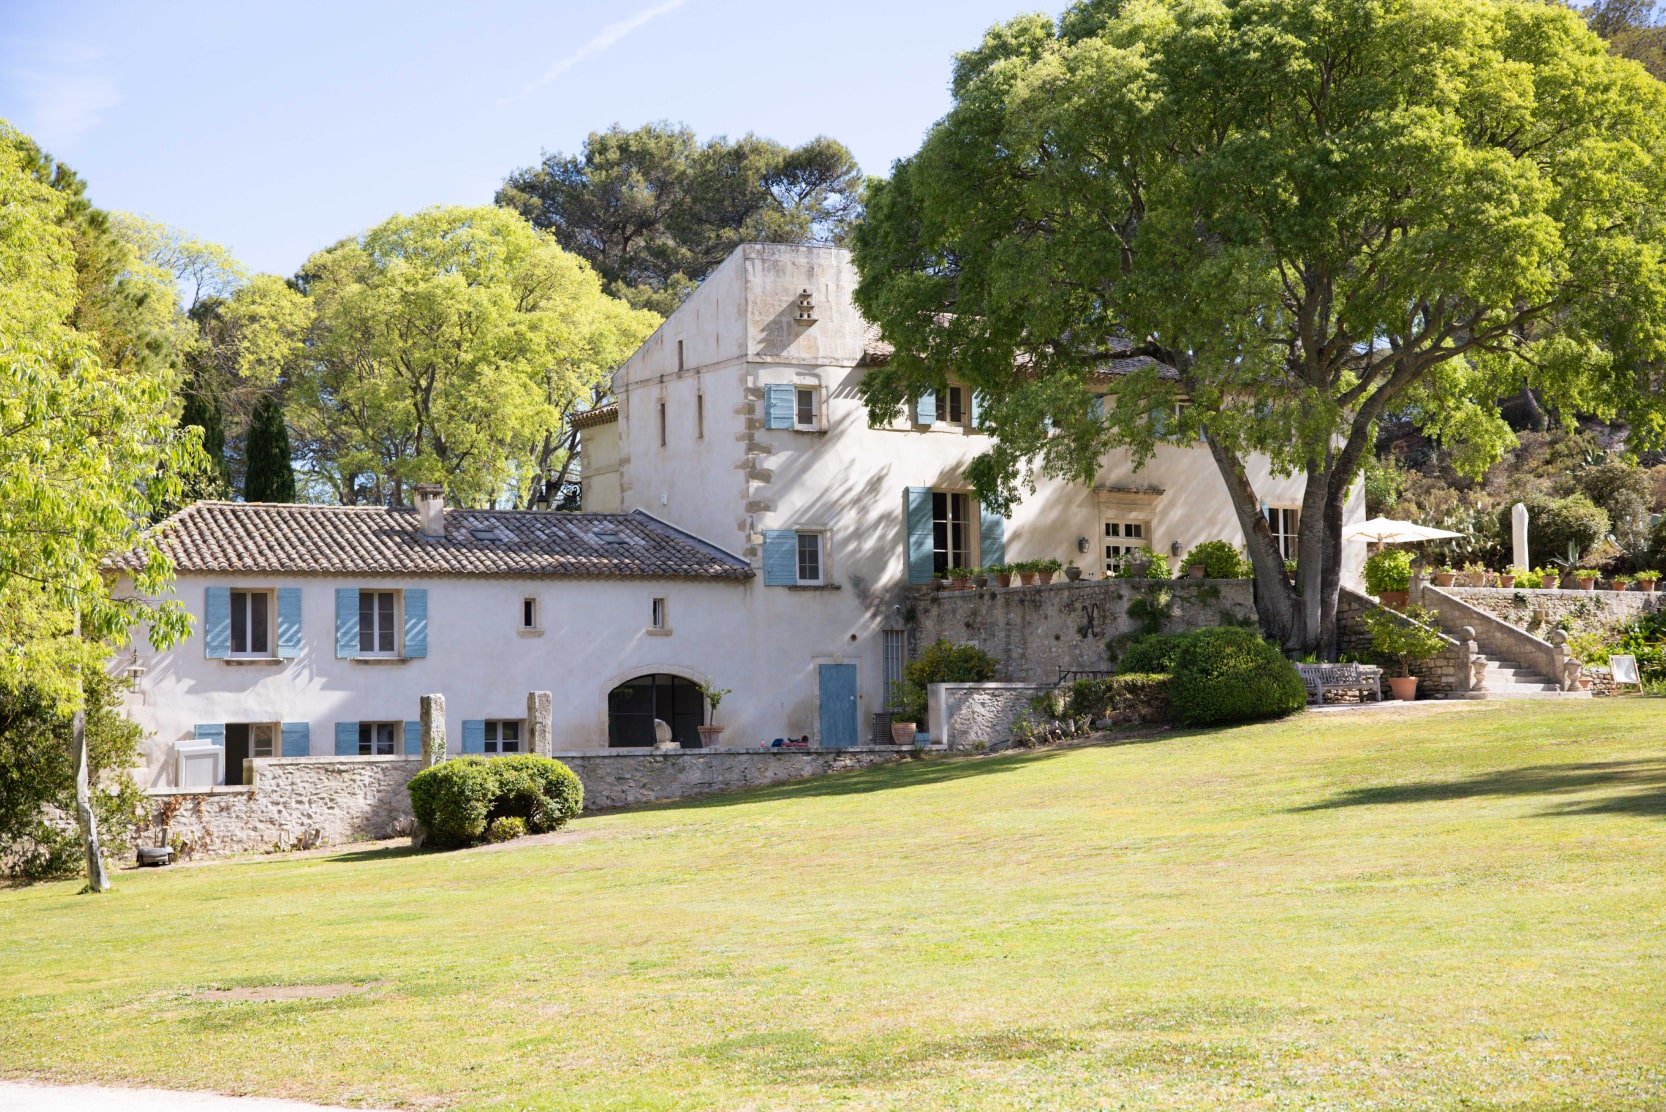 Entretien au Domaine des Vignes, pays des merveilles en Provence